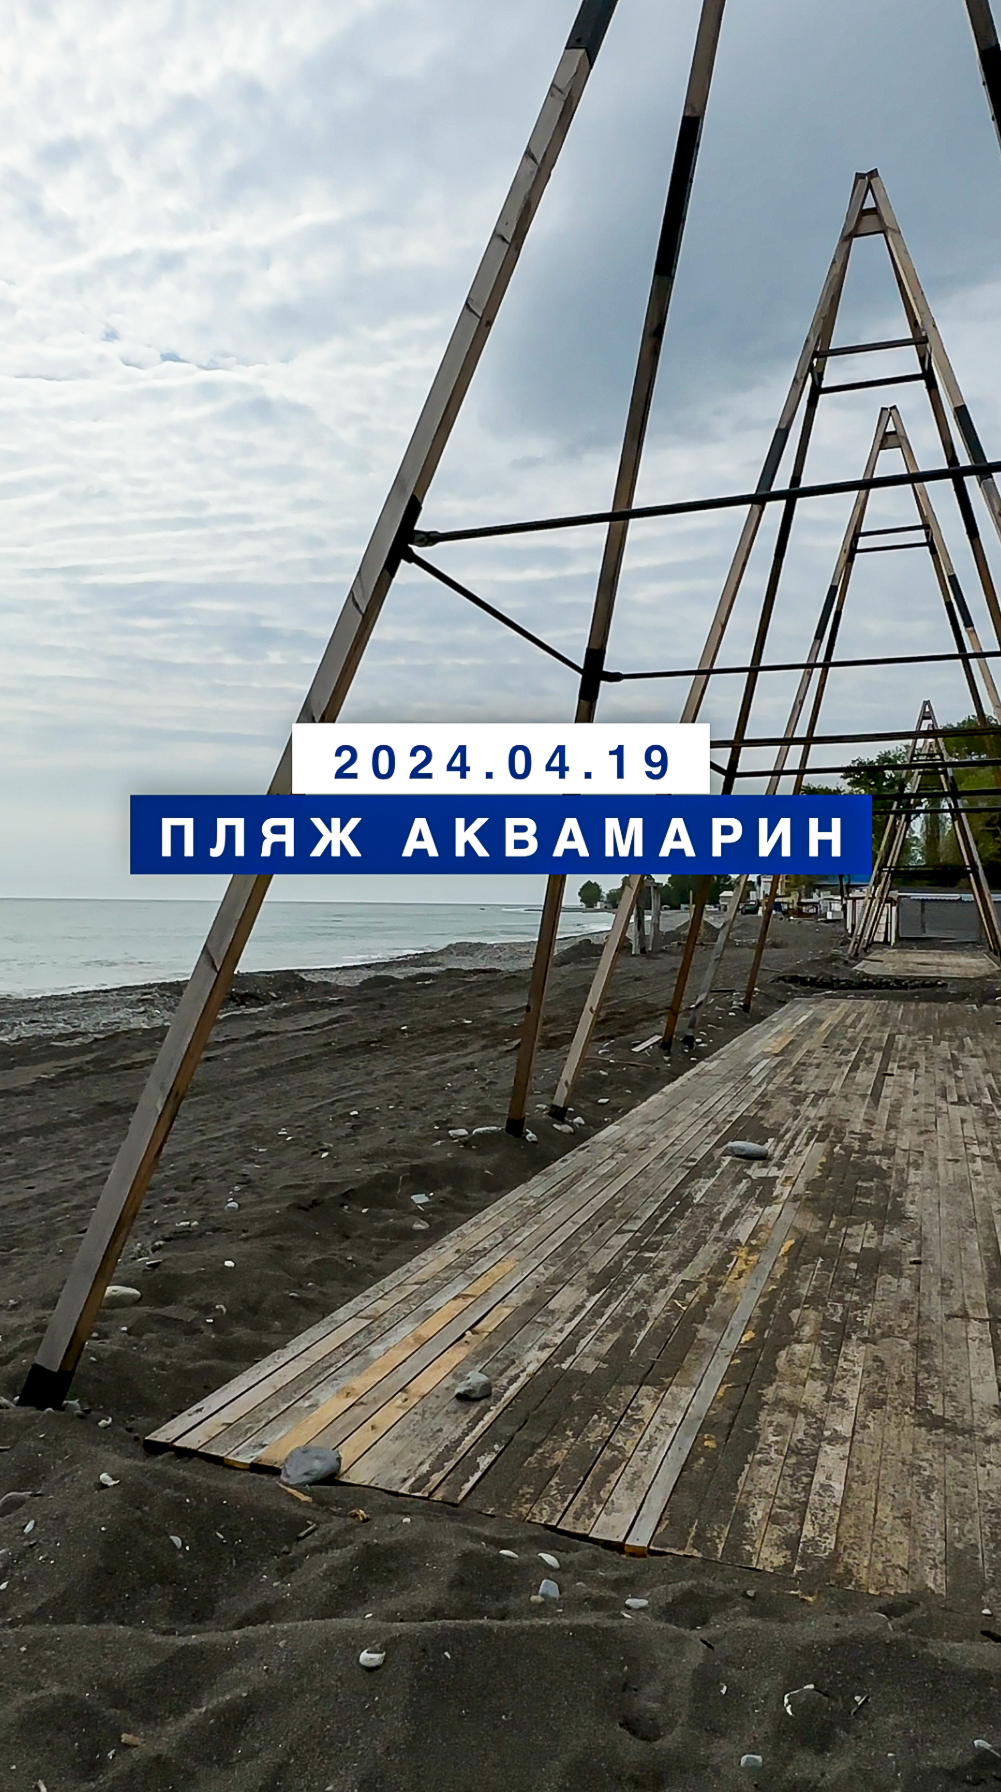 Обстановка на море в Лазаревском 19 апреля 2024, пляж Аквамарин.